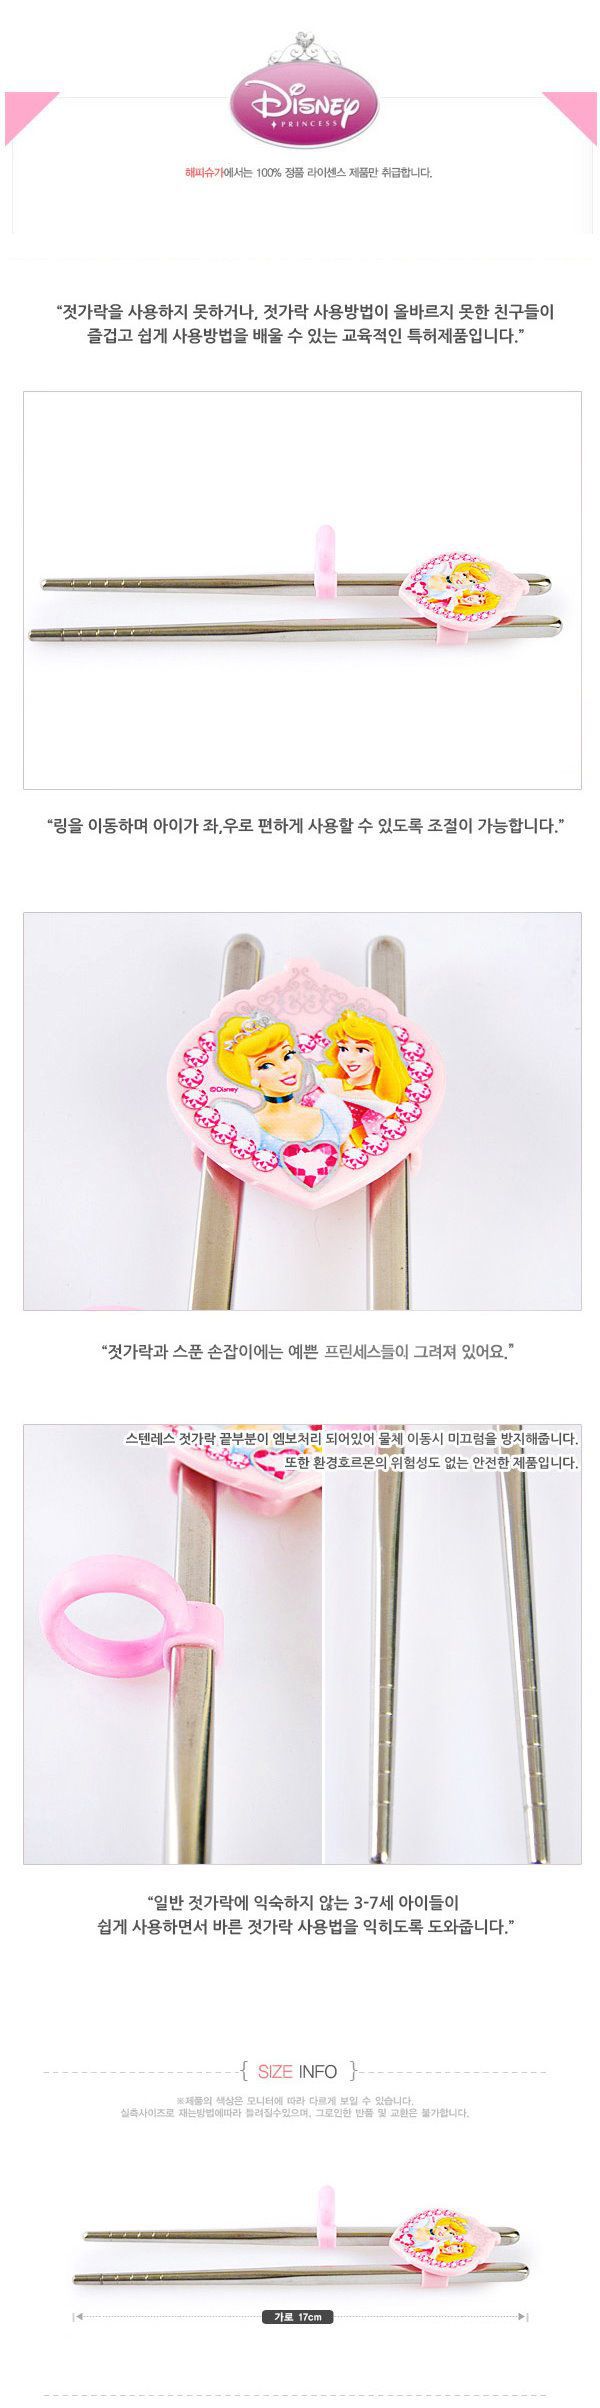 韓國製迪士尼公主系列兒童304不銹鋼學習筷